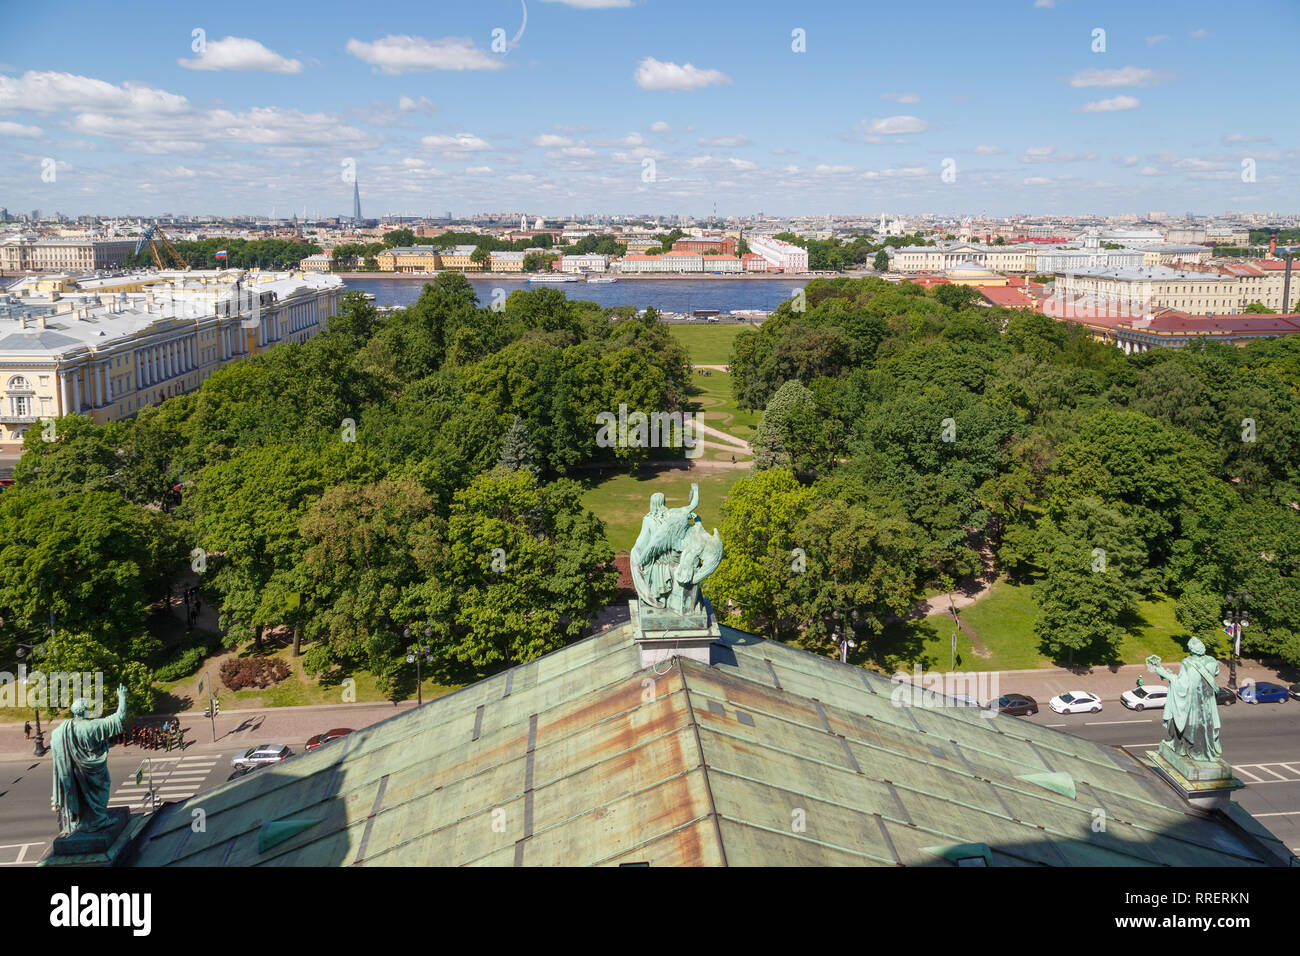 La Russie, SAINT-PETERSBOURG, 31 mai 2018 : vue panoramique depuis le toit de la cathédrale Saint-Isaac sur le centre historique de Saint-Pétersbourg et de l'Embankment Banque D'Images